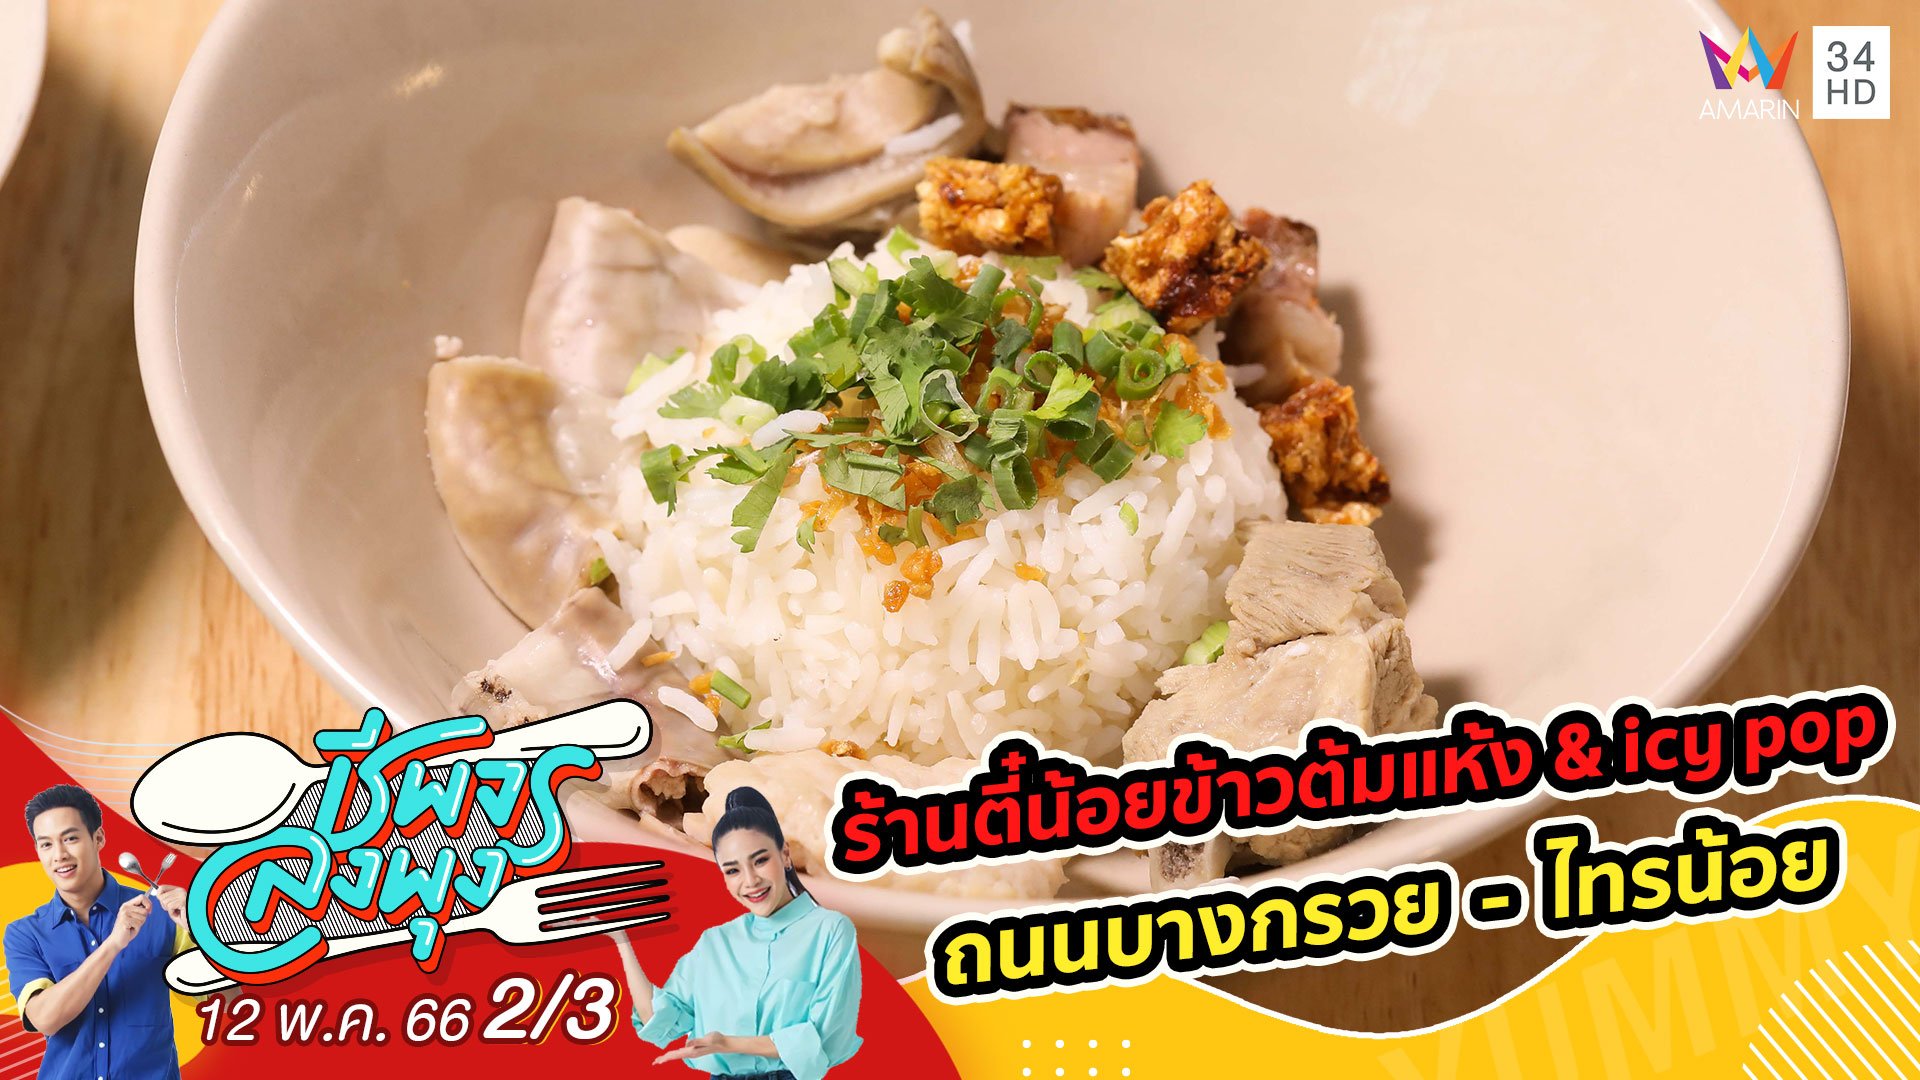 ข้าวต้มแห้ง เครื่องแน่น หอมพริกไทย @ ร้านตี๋น้อยข้าวต้มแห้ง & icy pop | ชีพจรลงพุง | 13 พ.ค. 66 (2/3) | AMARIN TVHD34